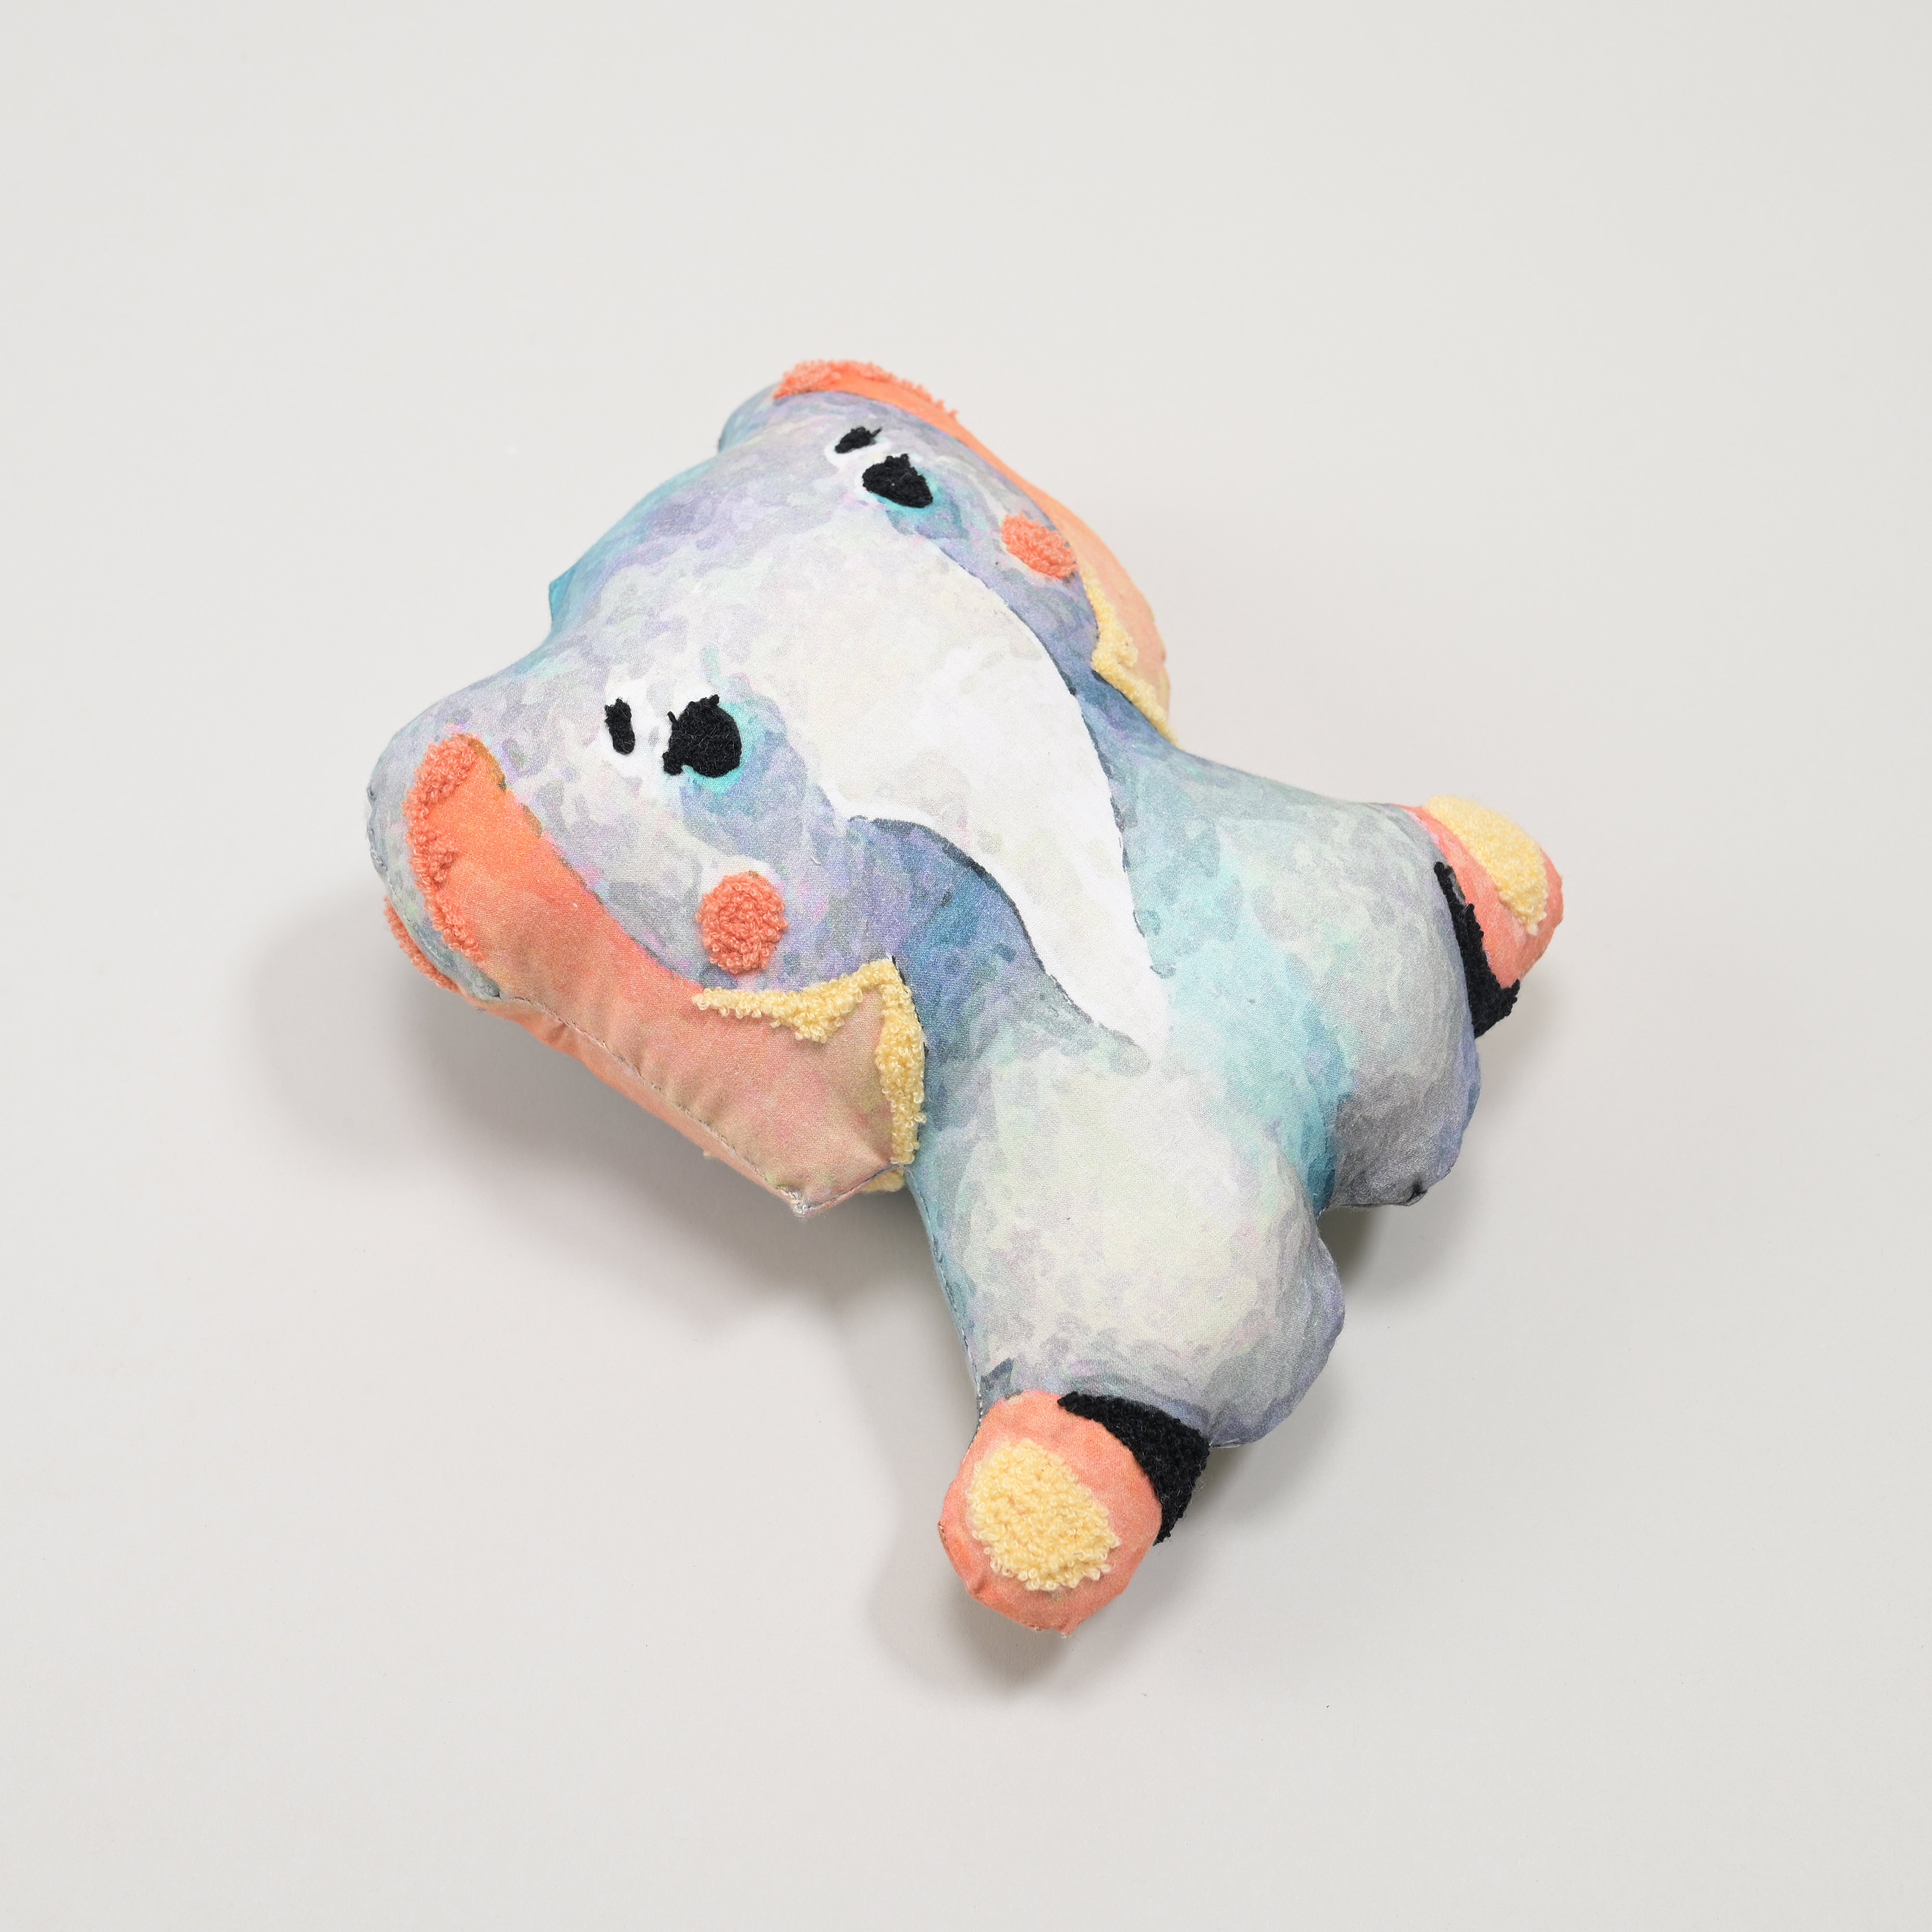 Joyful Jumbo: Kids' Elephant-Shaped Delightful Cushion